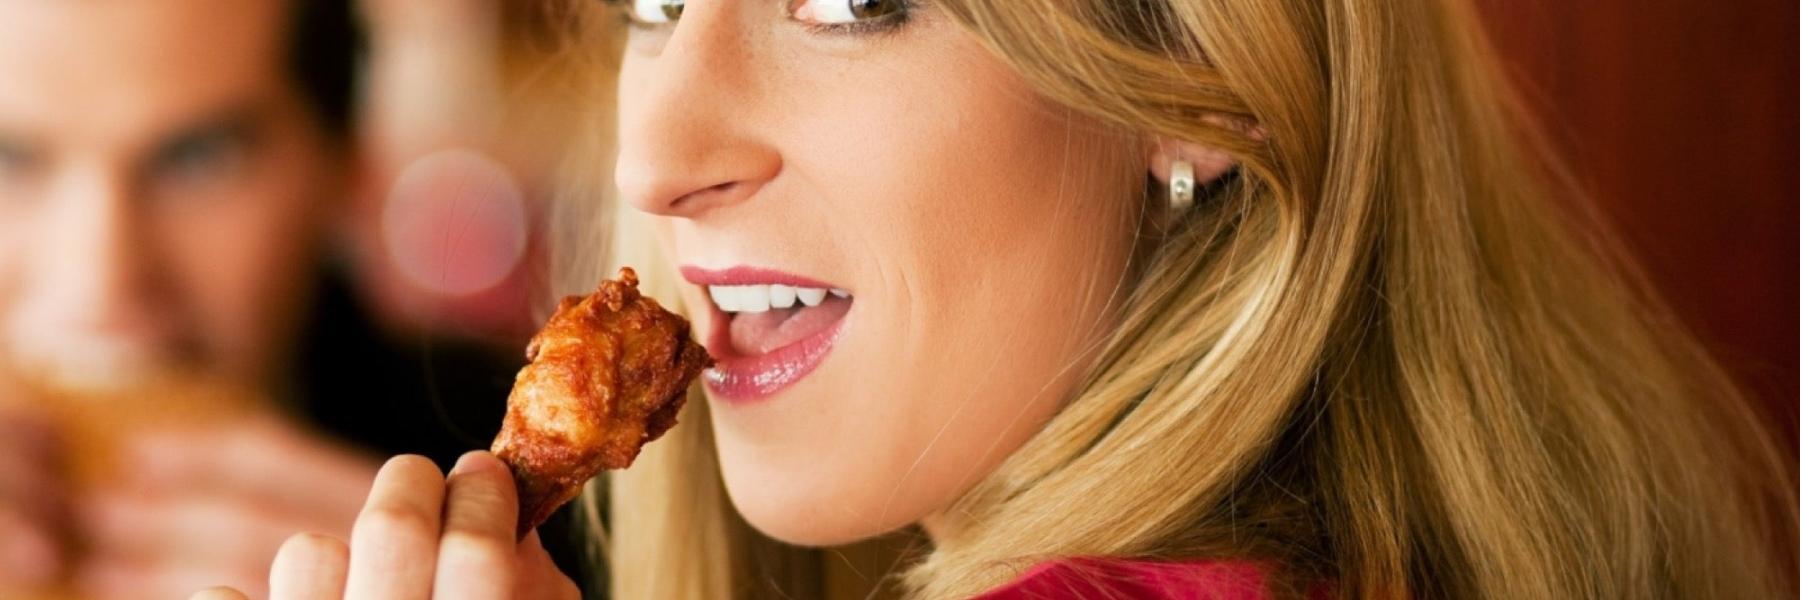 هل يمكنك تناول 12 قطعة من أجنحة الدجاج الحارة خلال أقل من 12 دقيقة؟